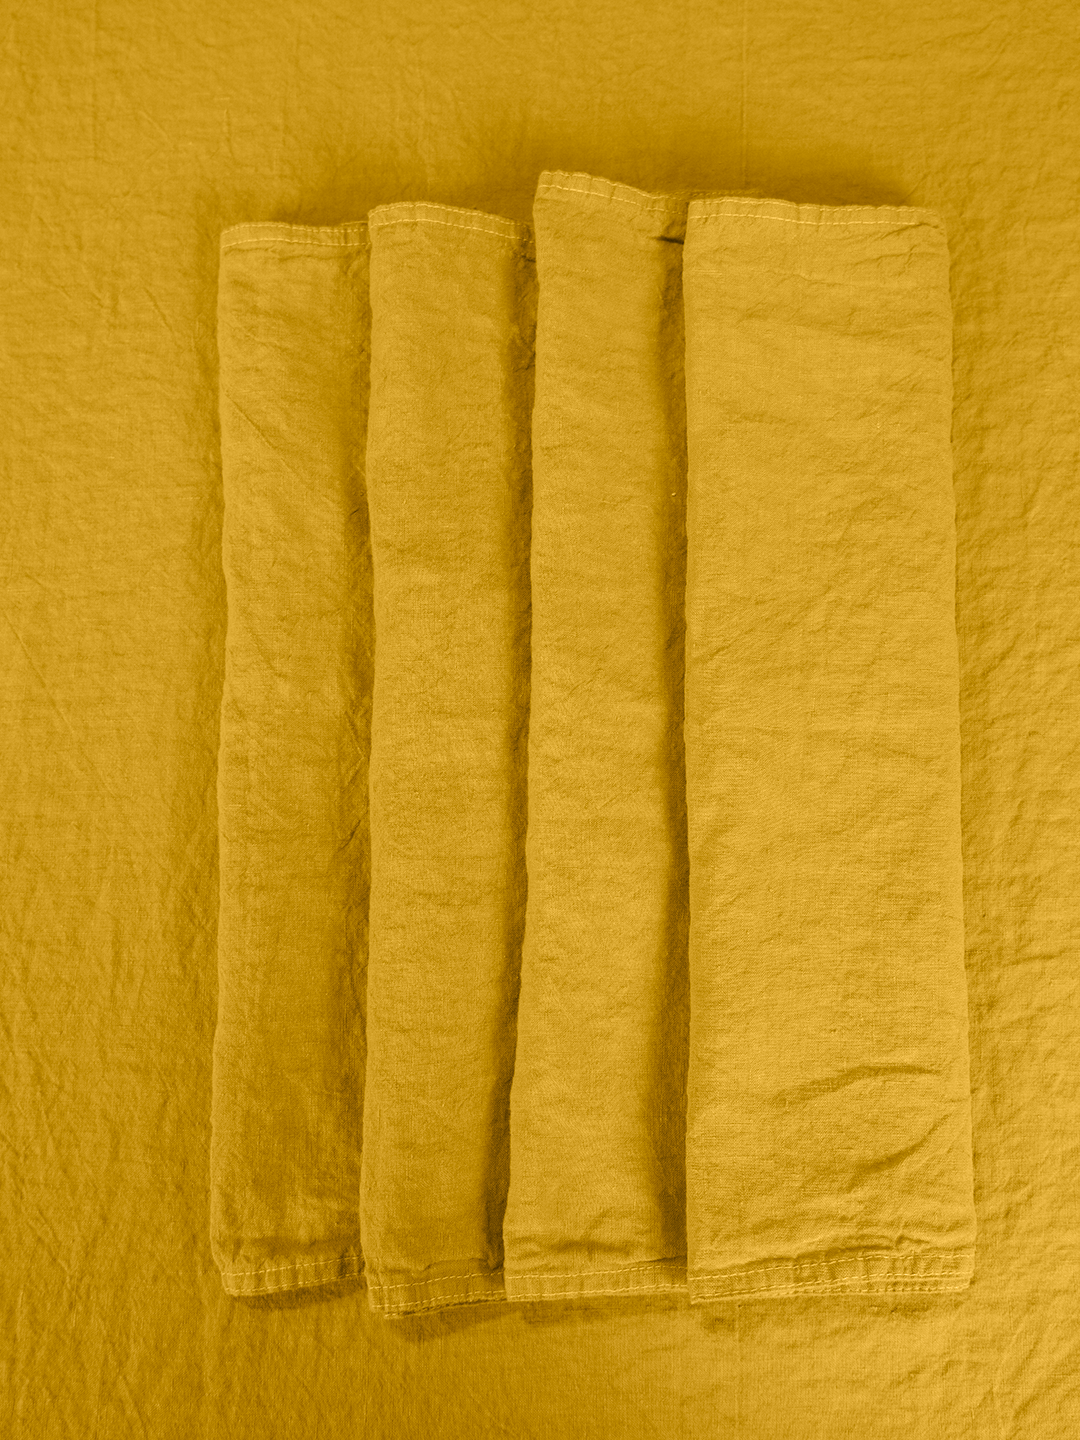 Conjunto de 4 guardanapos em linho amarelo (açafrão), fabricados em Portugal.